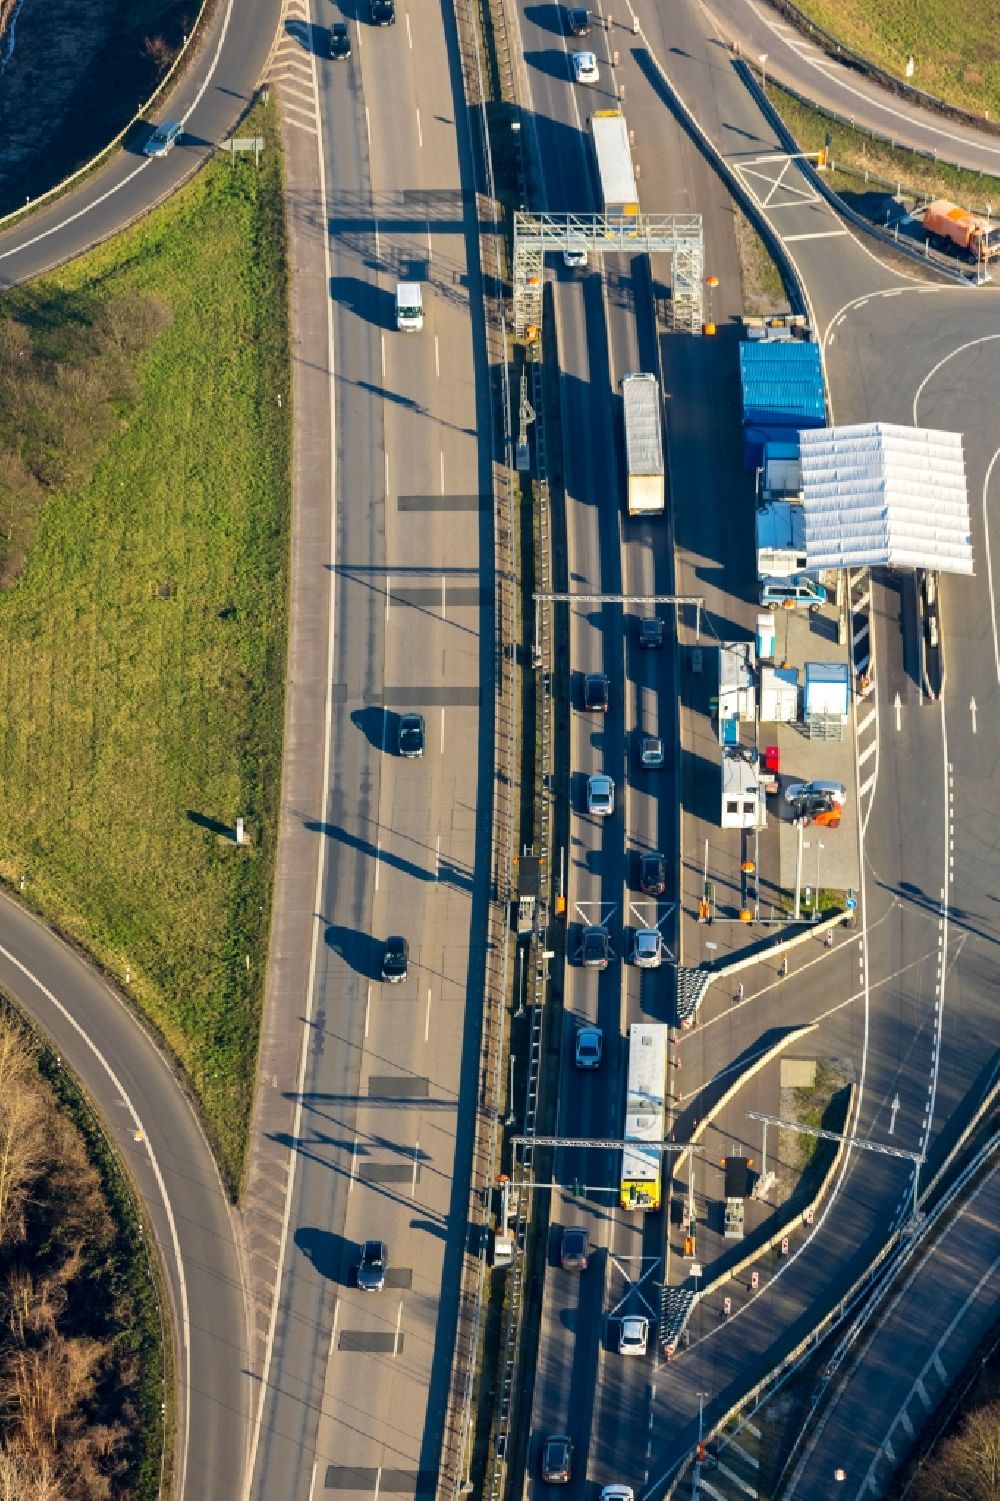 Luftbild Duisburg - Autobahn- Streckenverlauf der A40 mit LKW-Waage - dem A40 Wiegeplatz in Duisburg im Bundesland Nordrhein-Westfalen, Deutschland